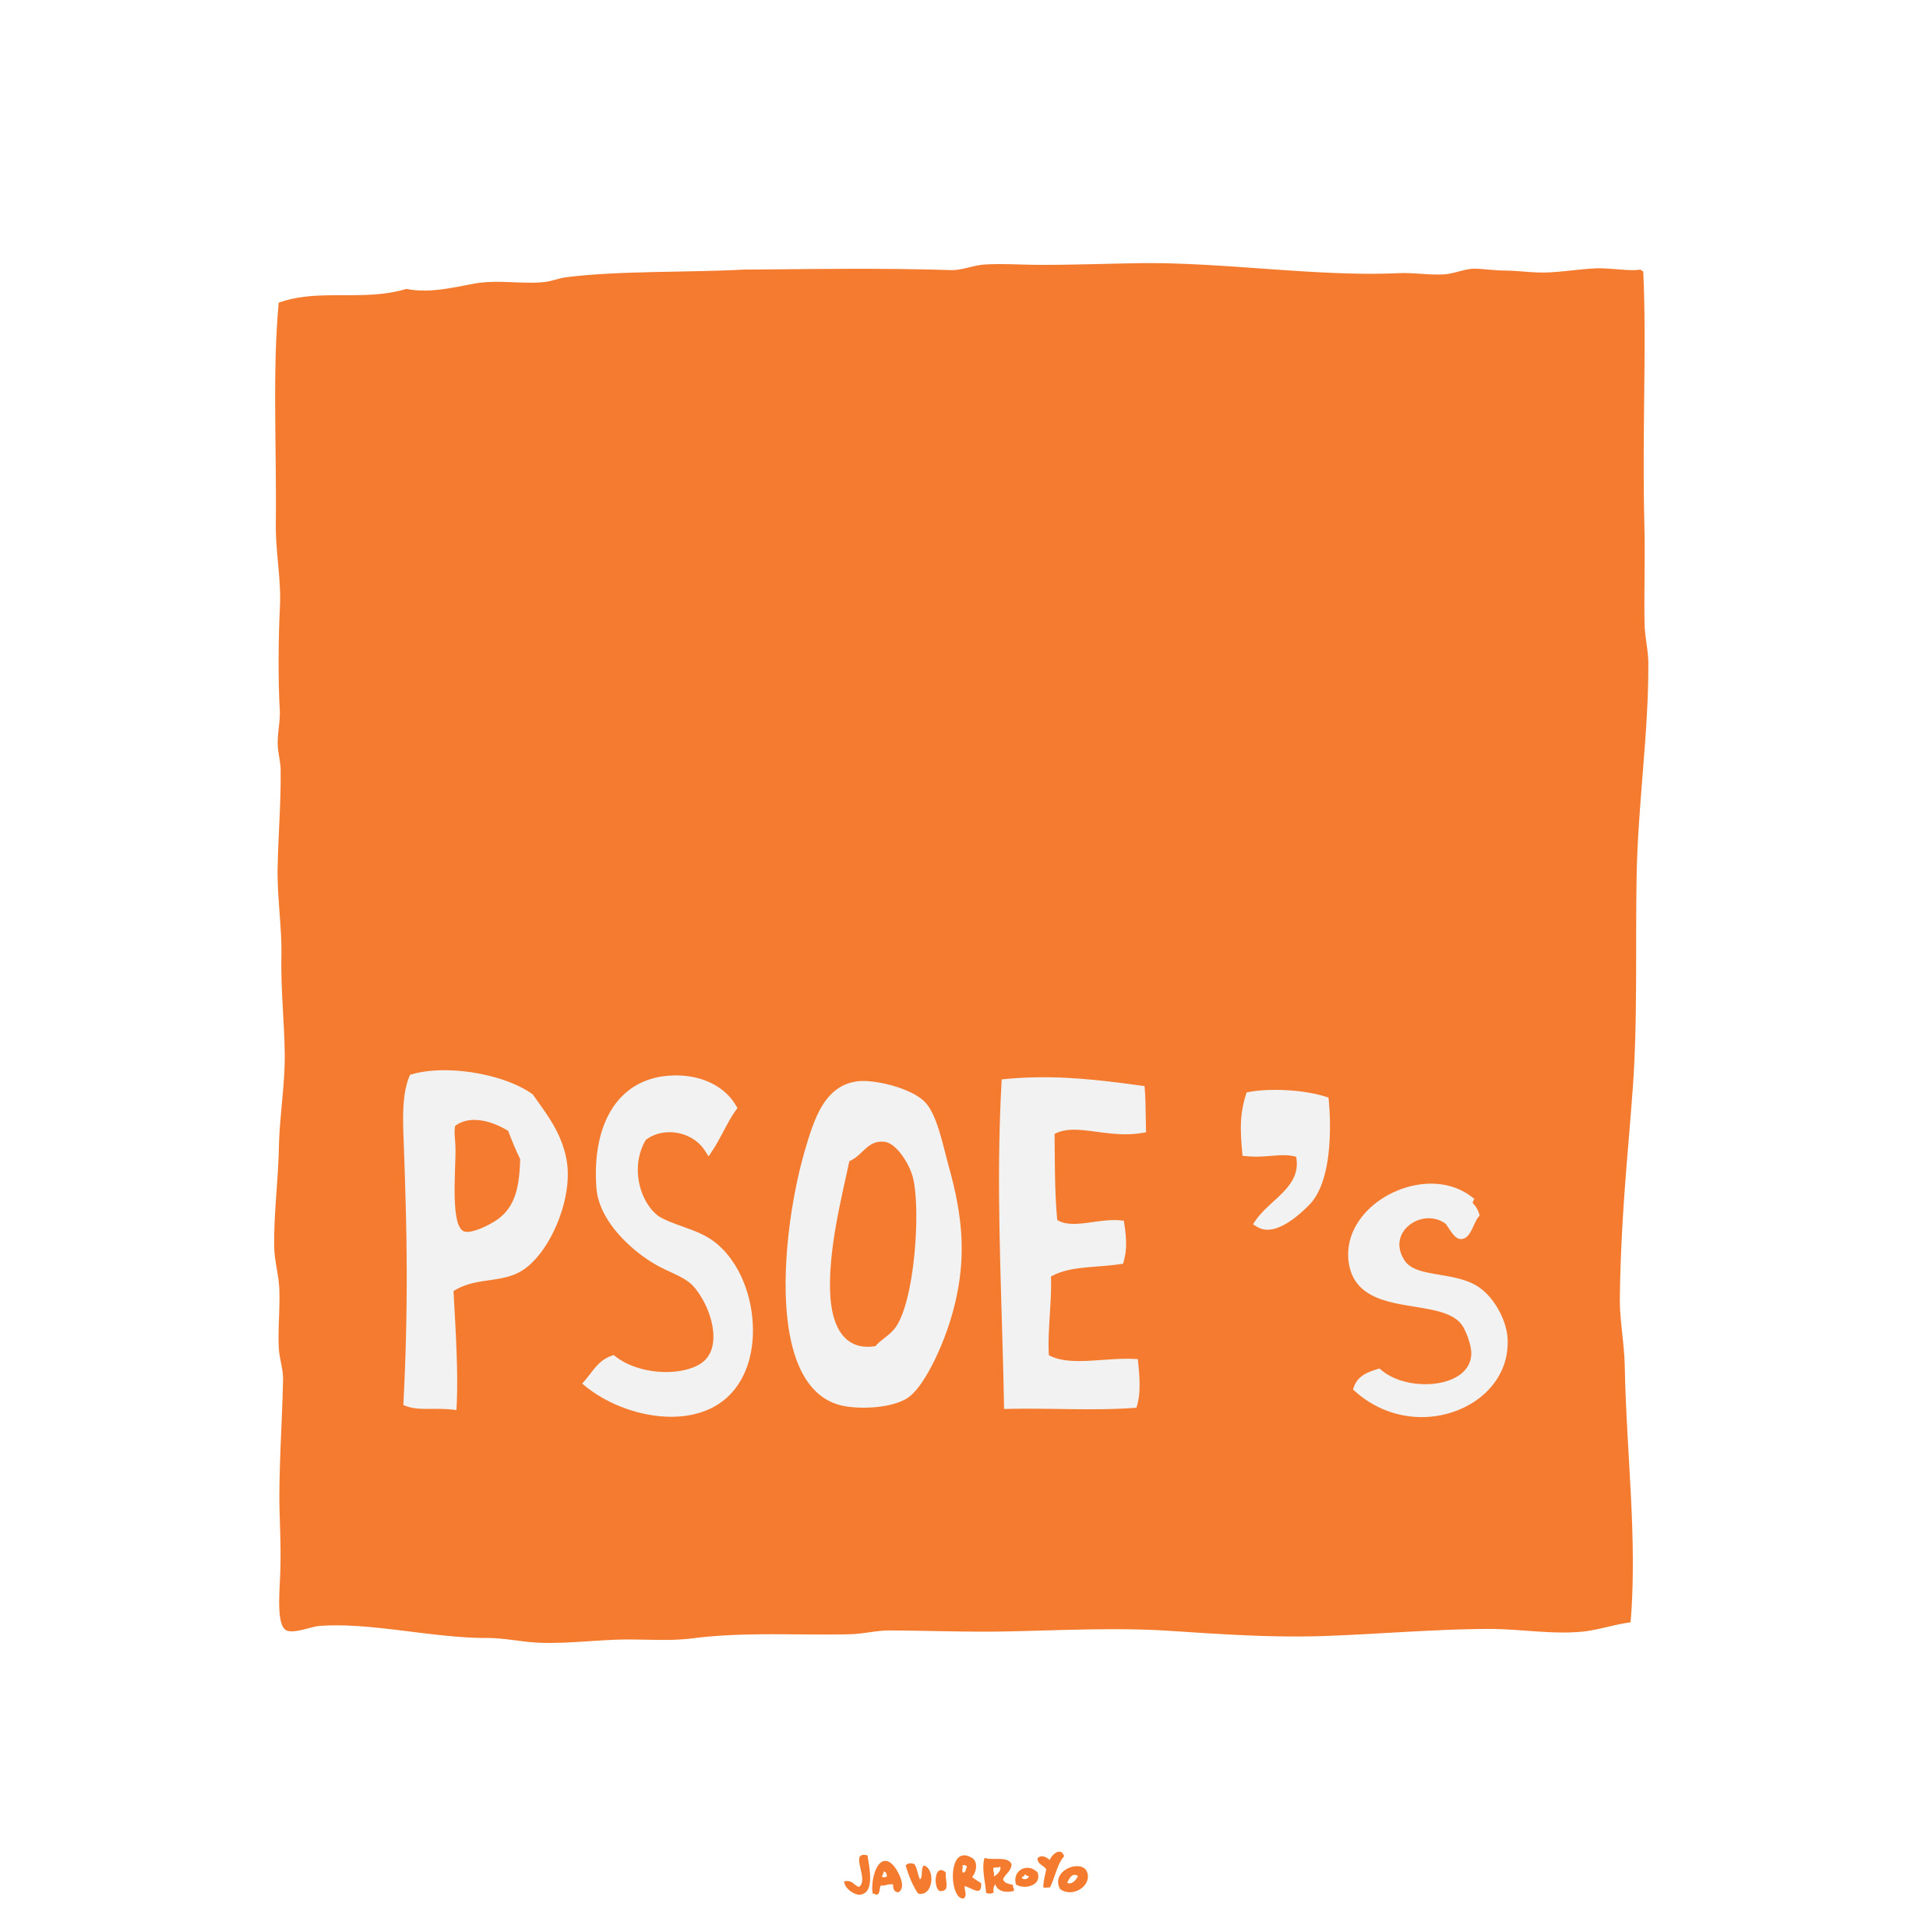 PSOE-s